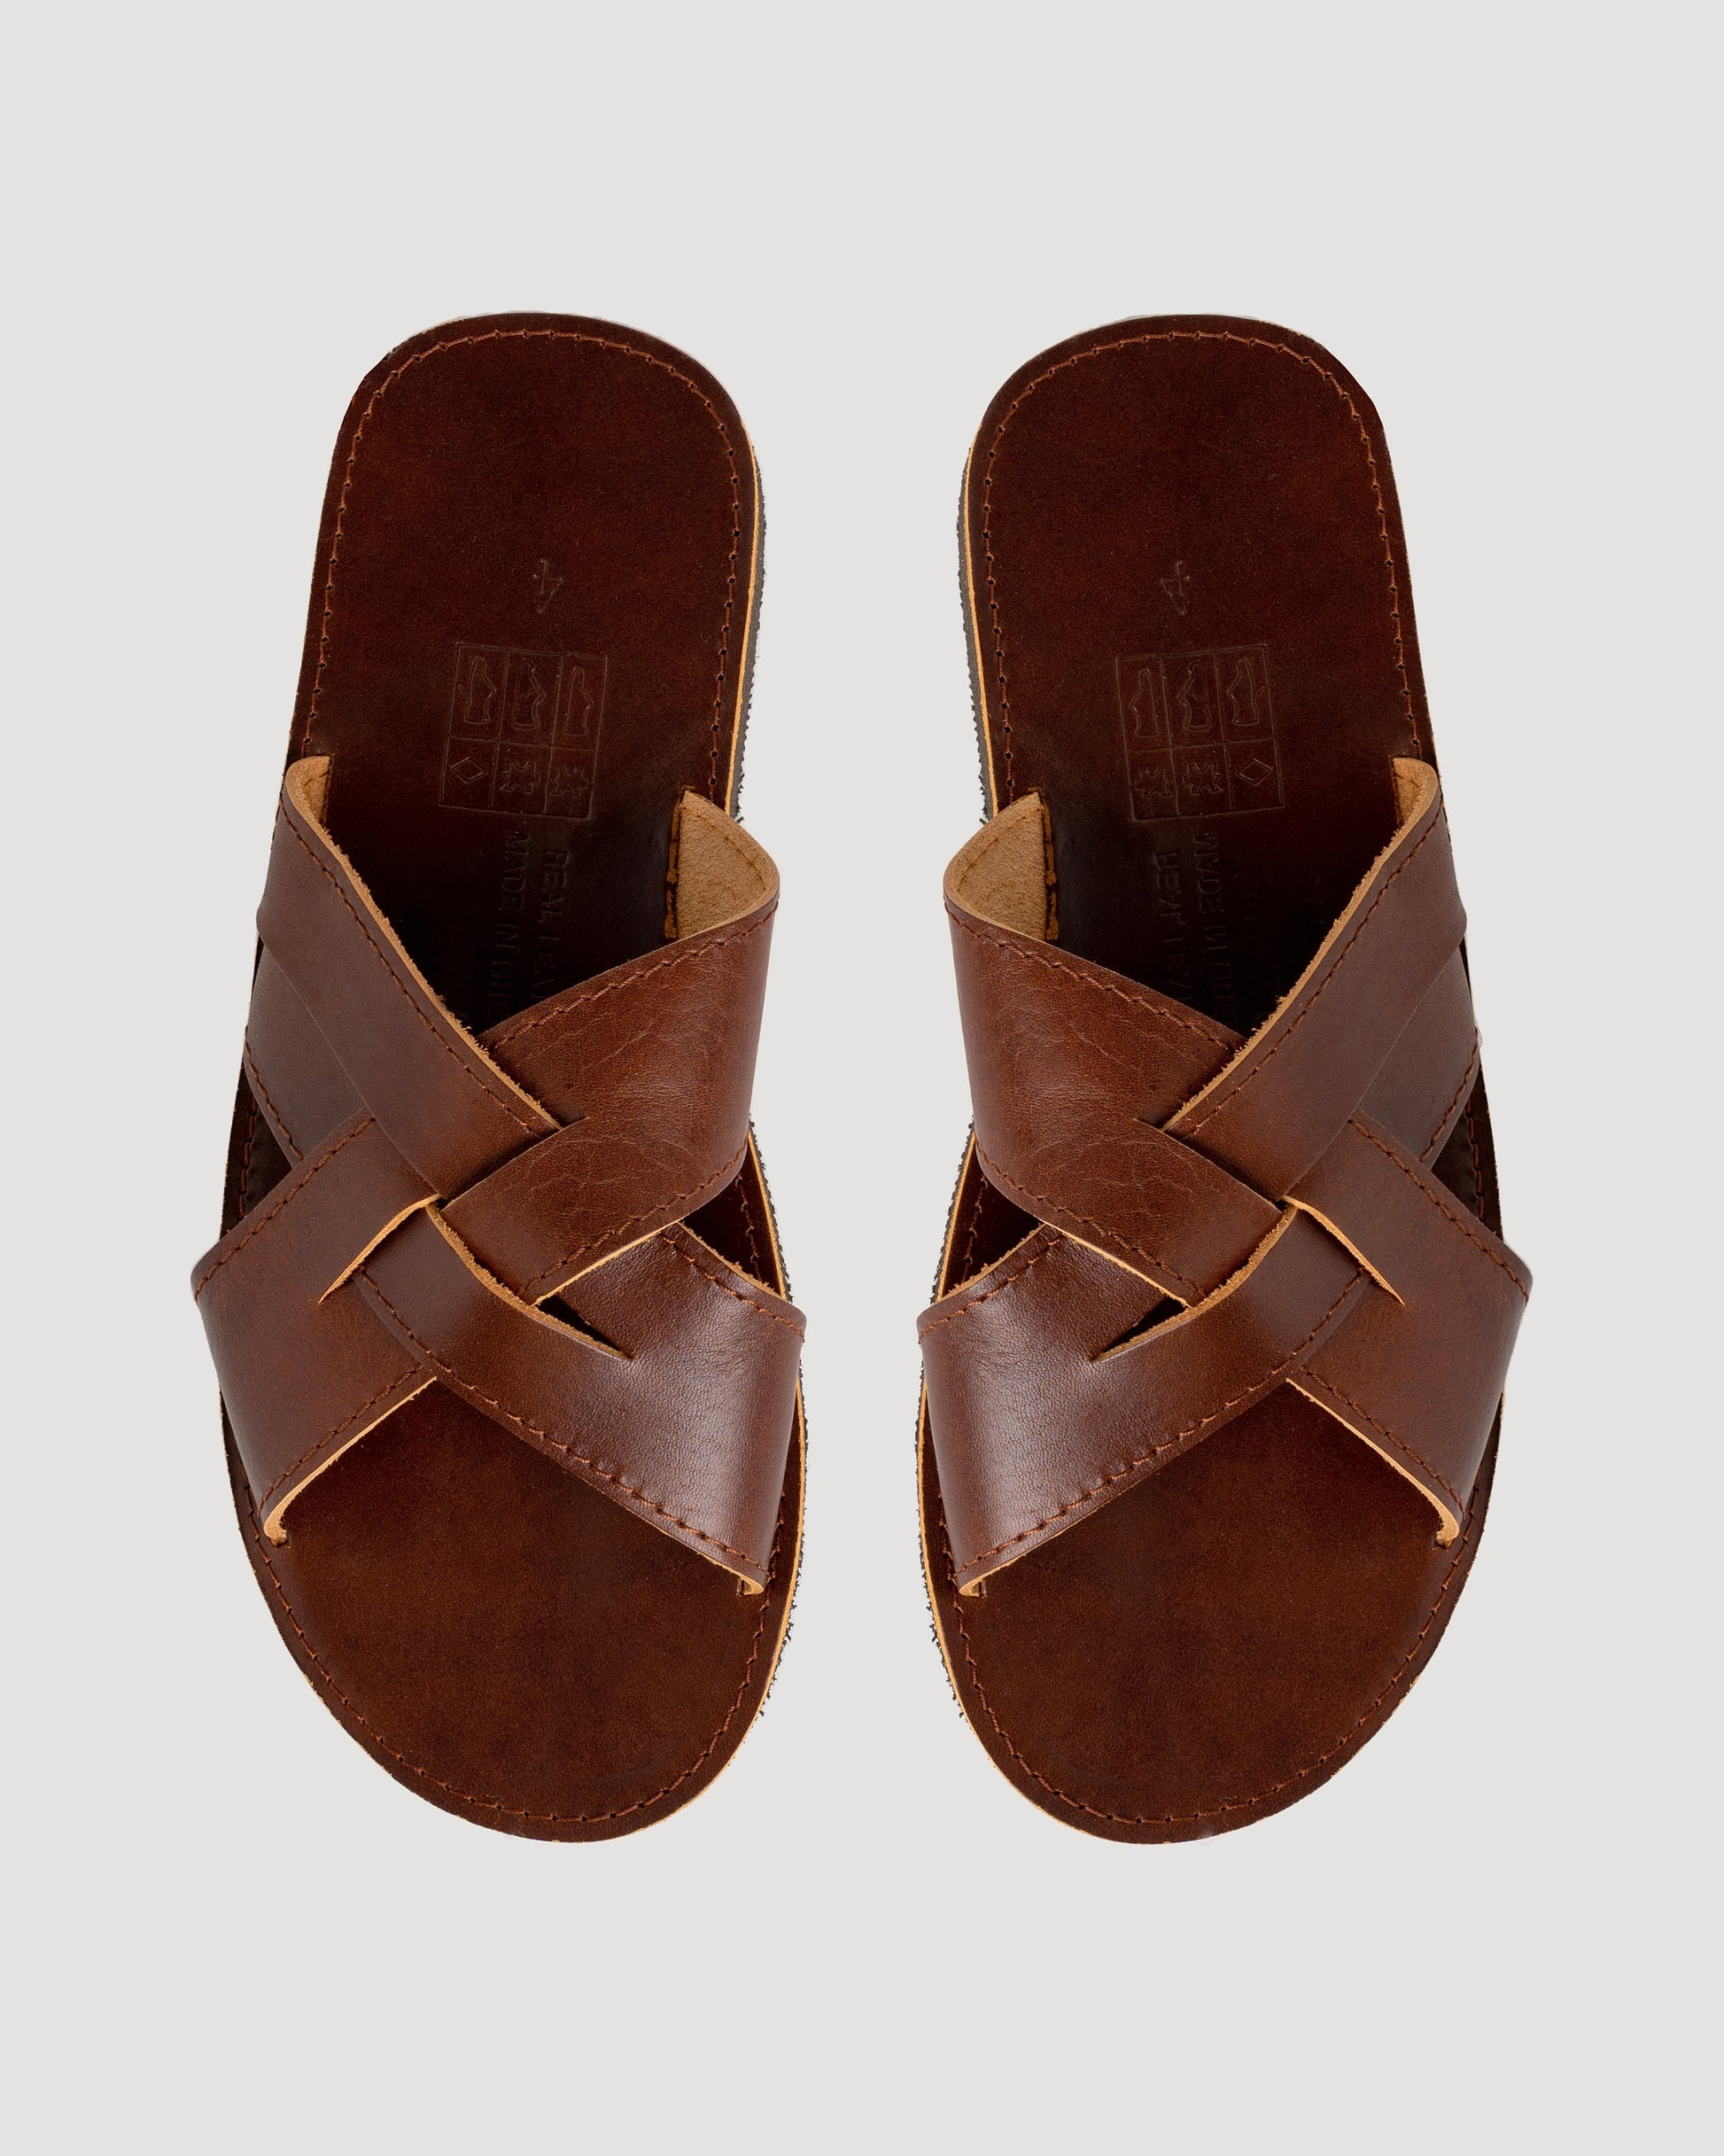 Leather sandals men, Leather Greek sandals, Minimalist sandals, Barefoot leather slides, Sandales cuir homme, Sandalen herren